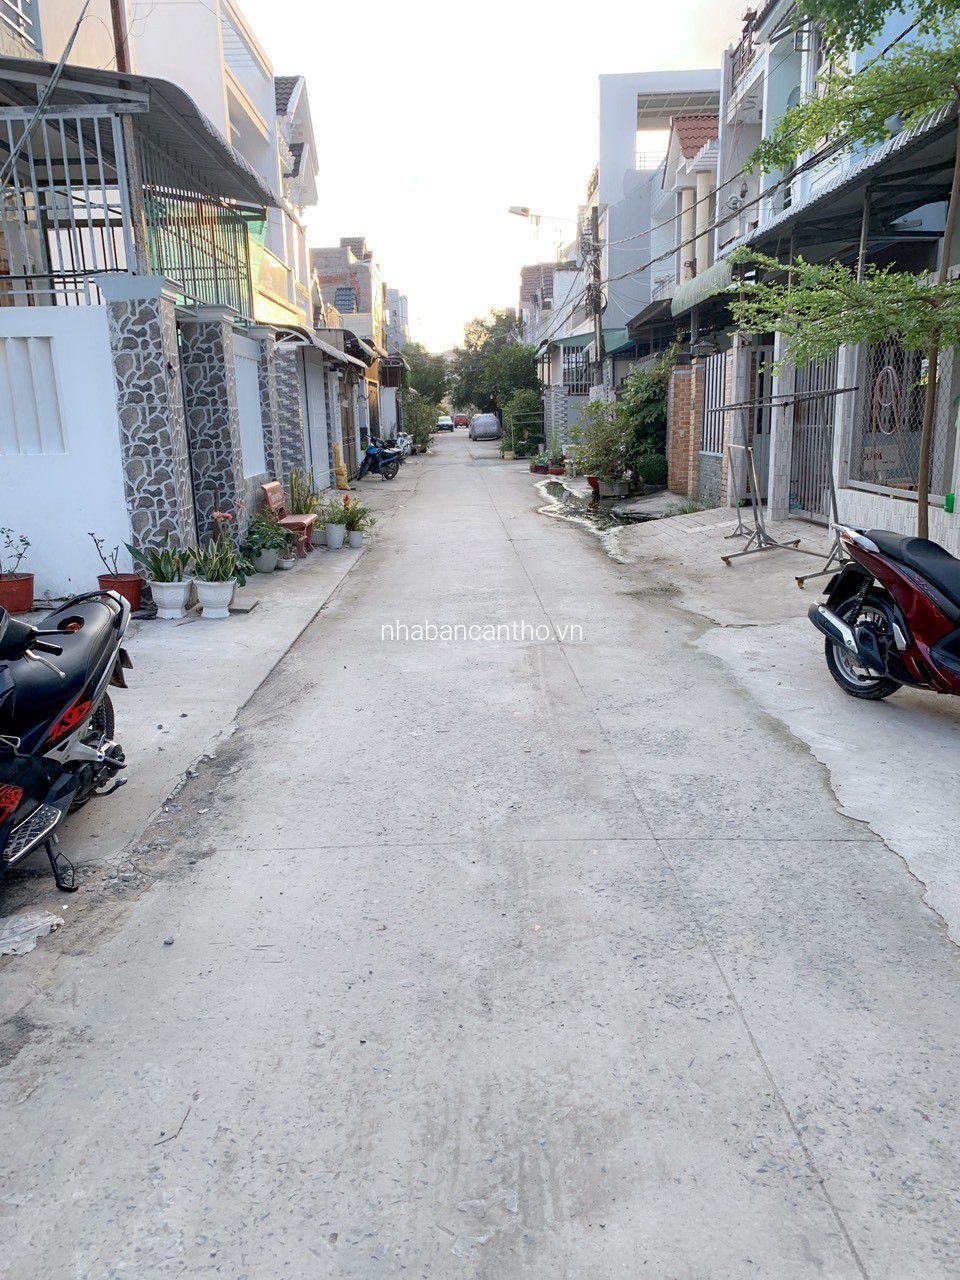 bán nhà trệt lầu mới hoàn công - Hẻm 234 đường Hoàng Quốc Việt